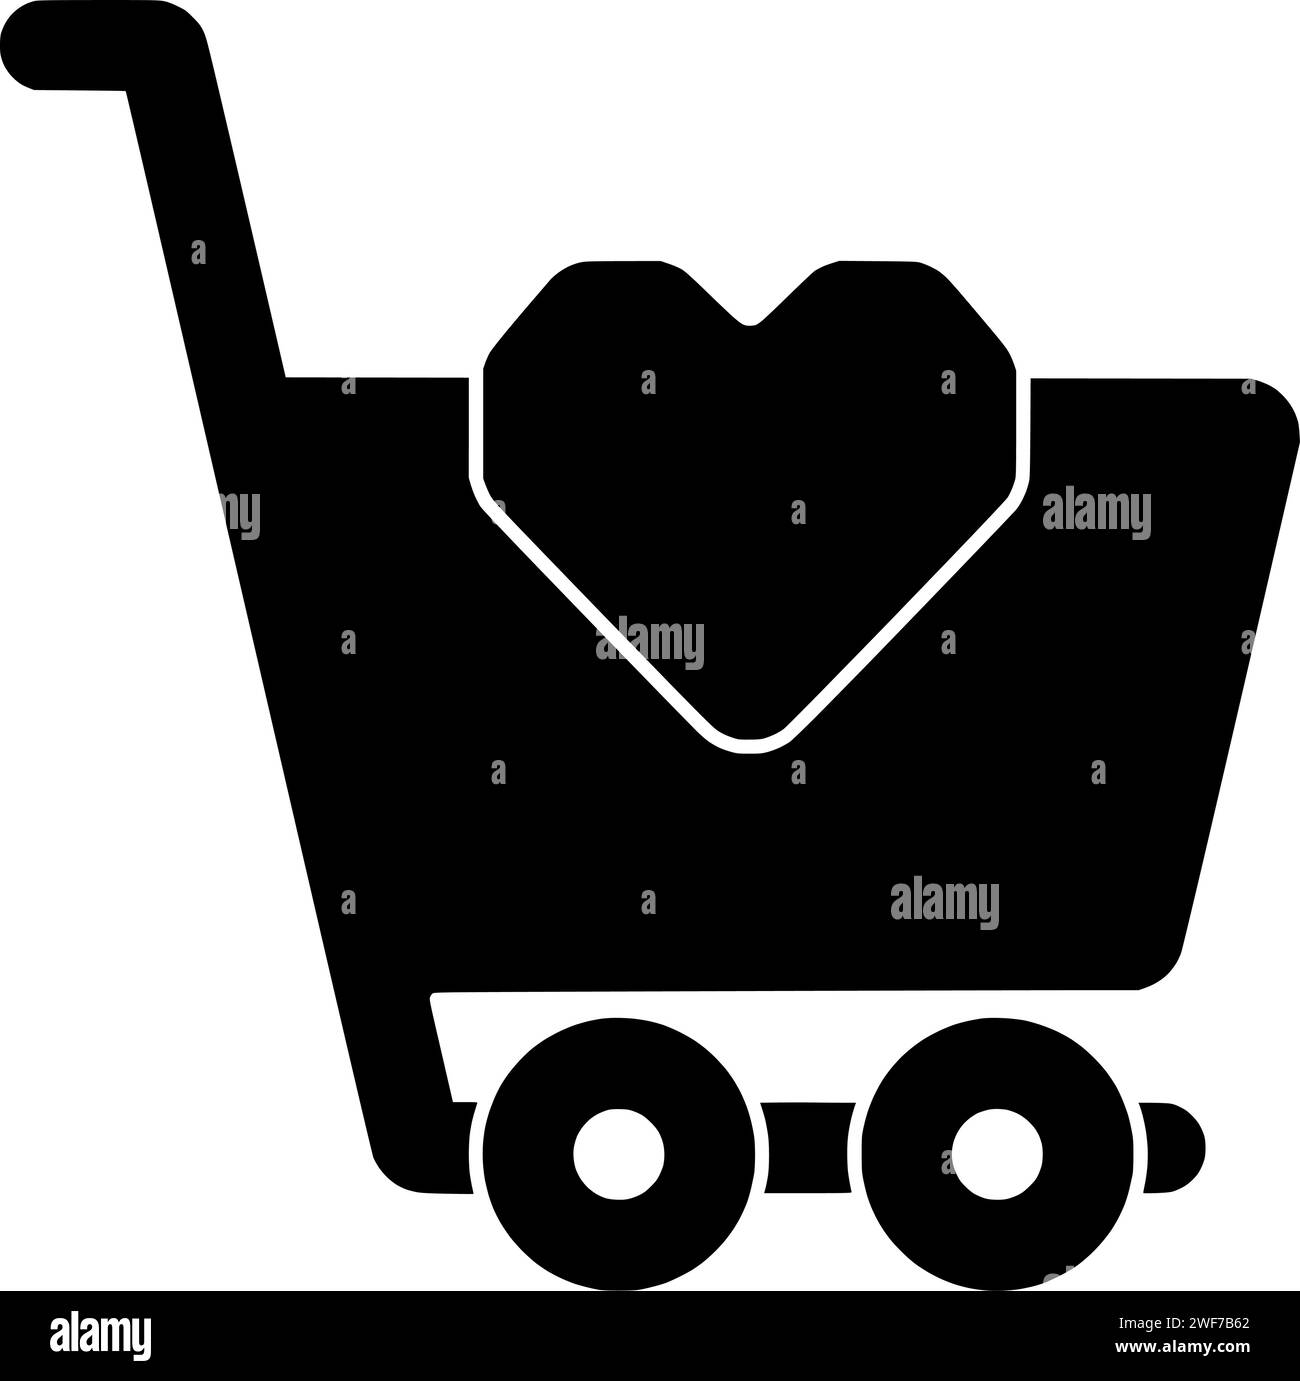 Trolley Illustration Liebe Silhouette Wagen Logo Supermarkt Icon Store Umriss Kauf Kauf Verkauf Shop Käufer Kunde glückliches Shopping Paar Form Einzelhandel Familie Konsum Stock Vektor